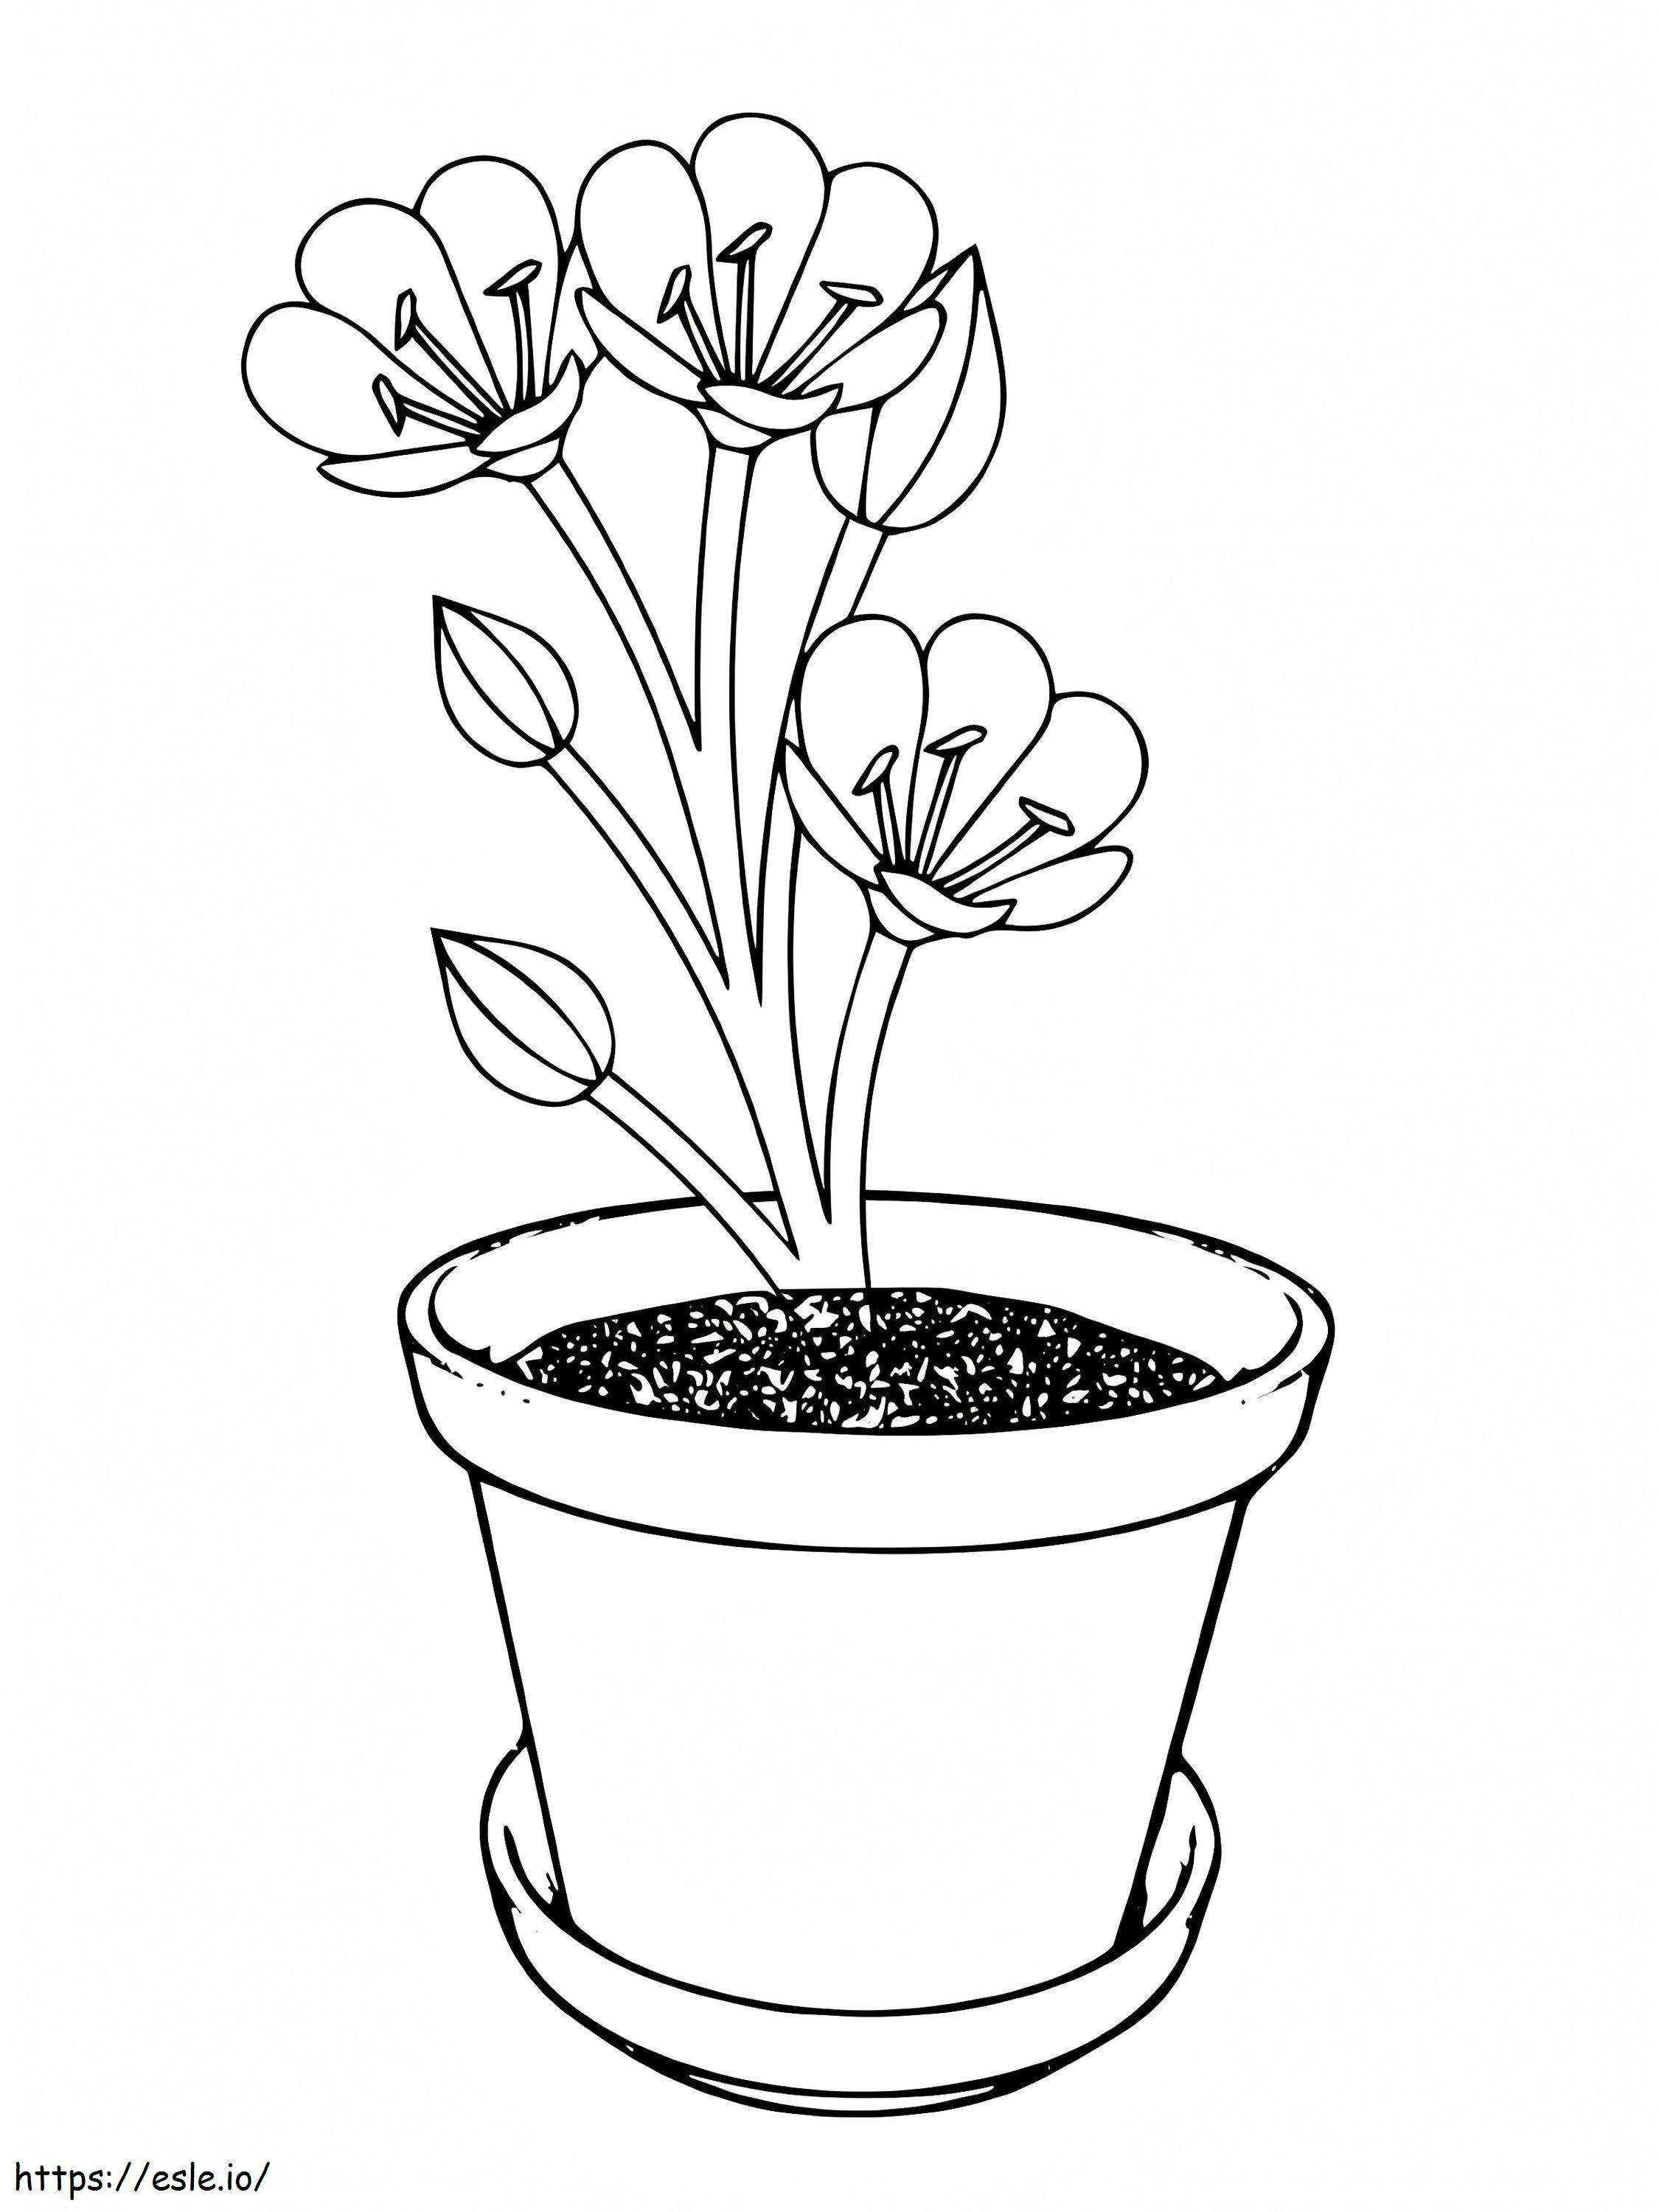 Einfache Krokus-Blumenvase ausmalbilder